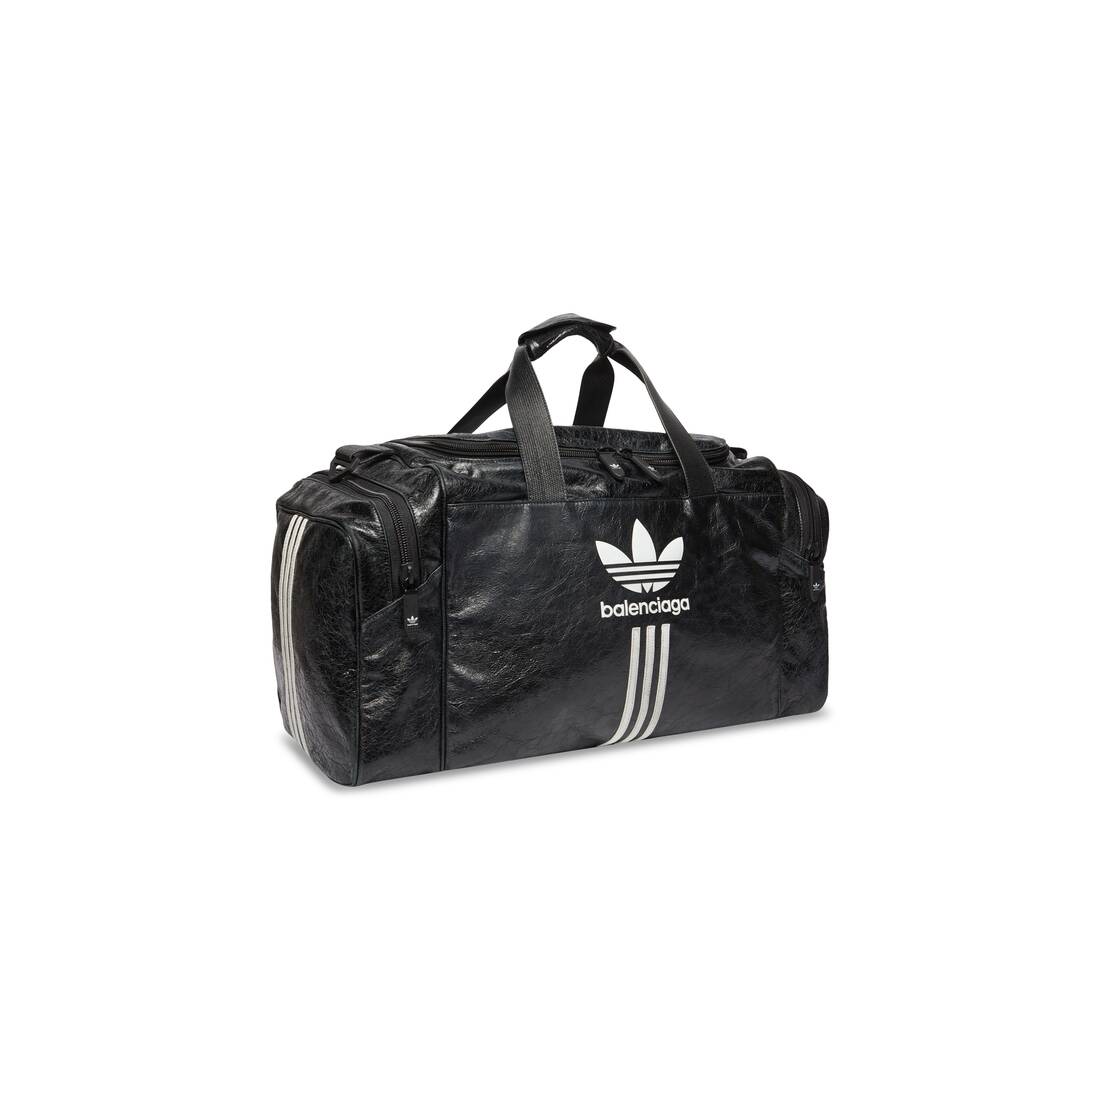 Men's Balenciaga / Adidas Gym Bag in | Balenciaga